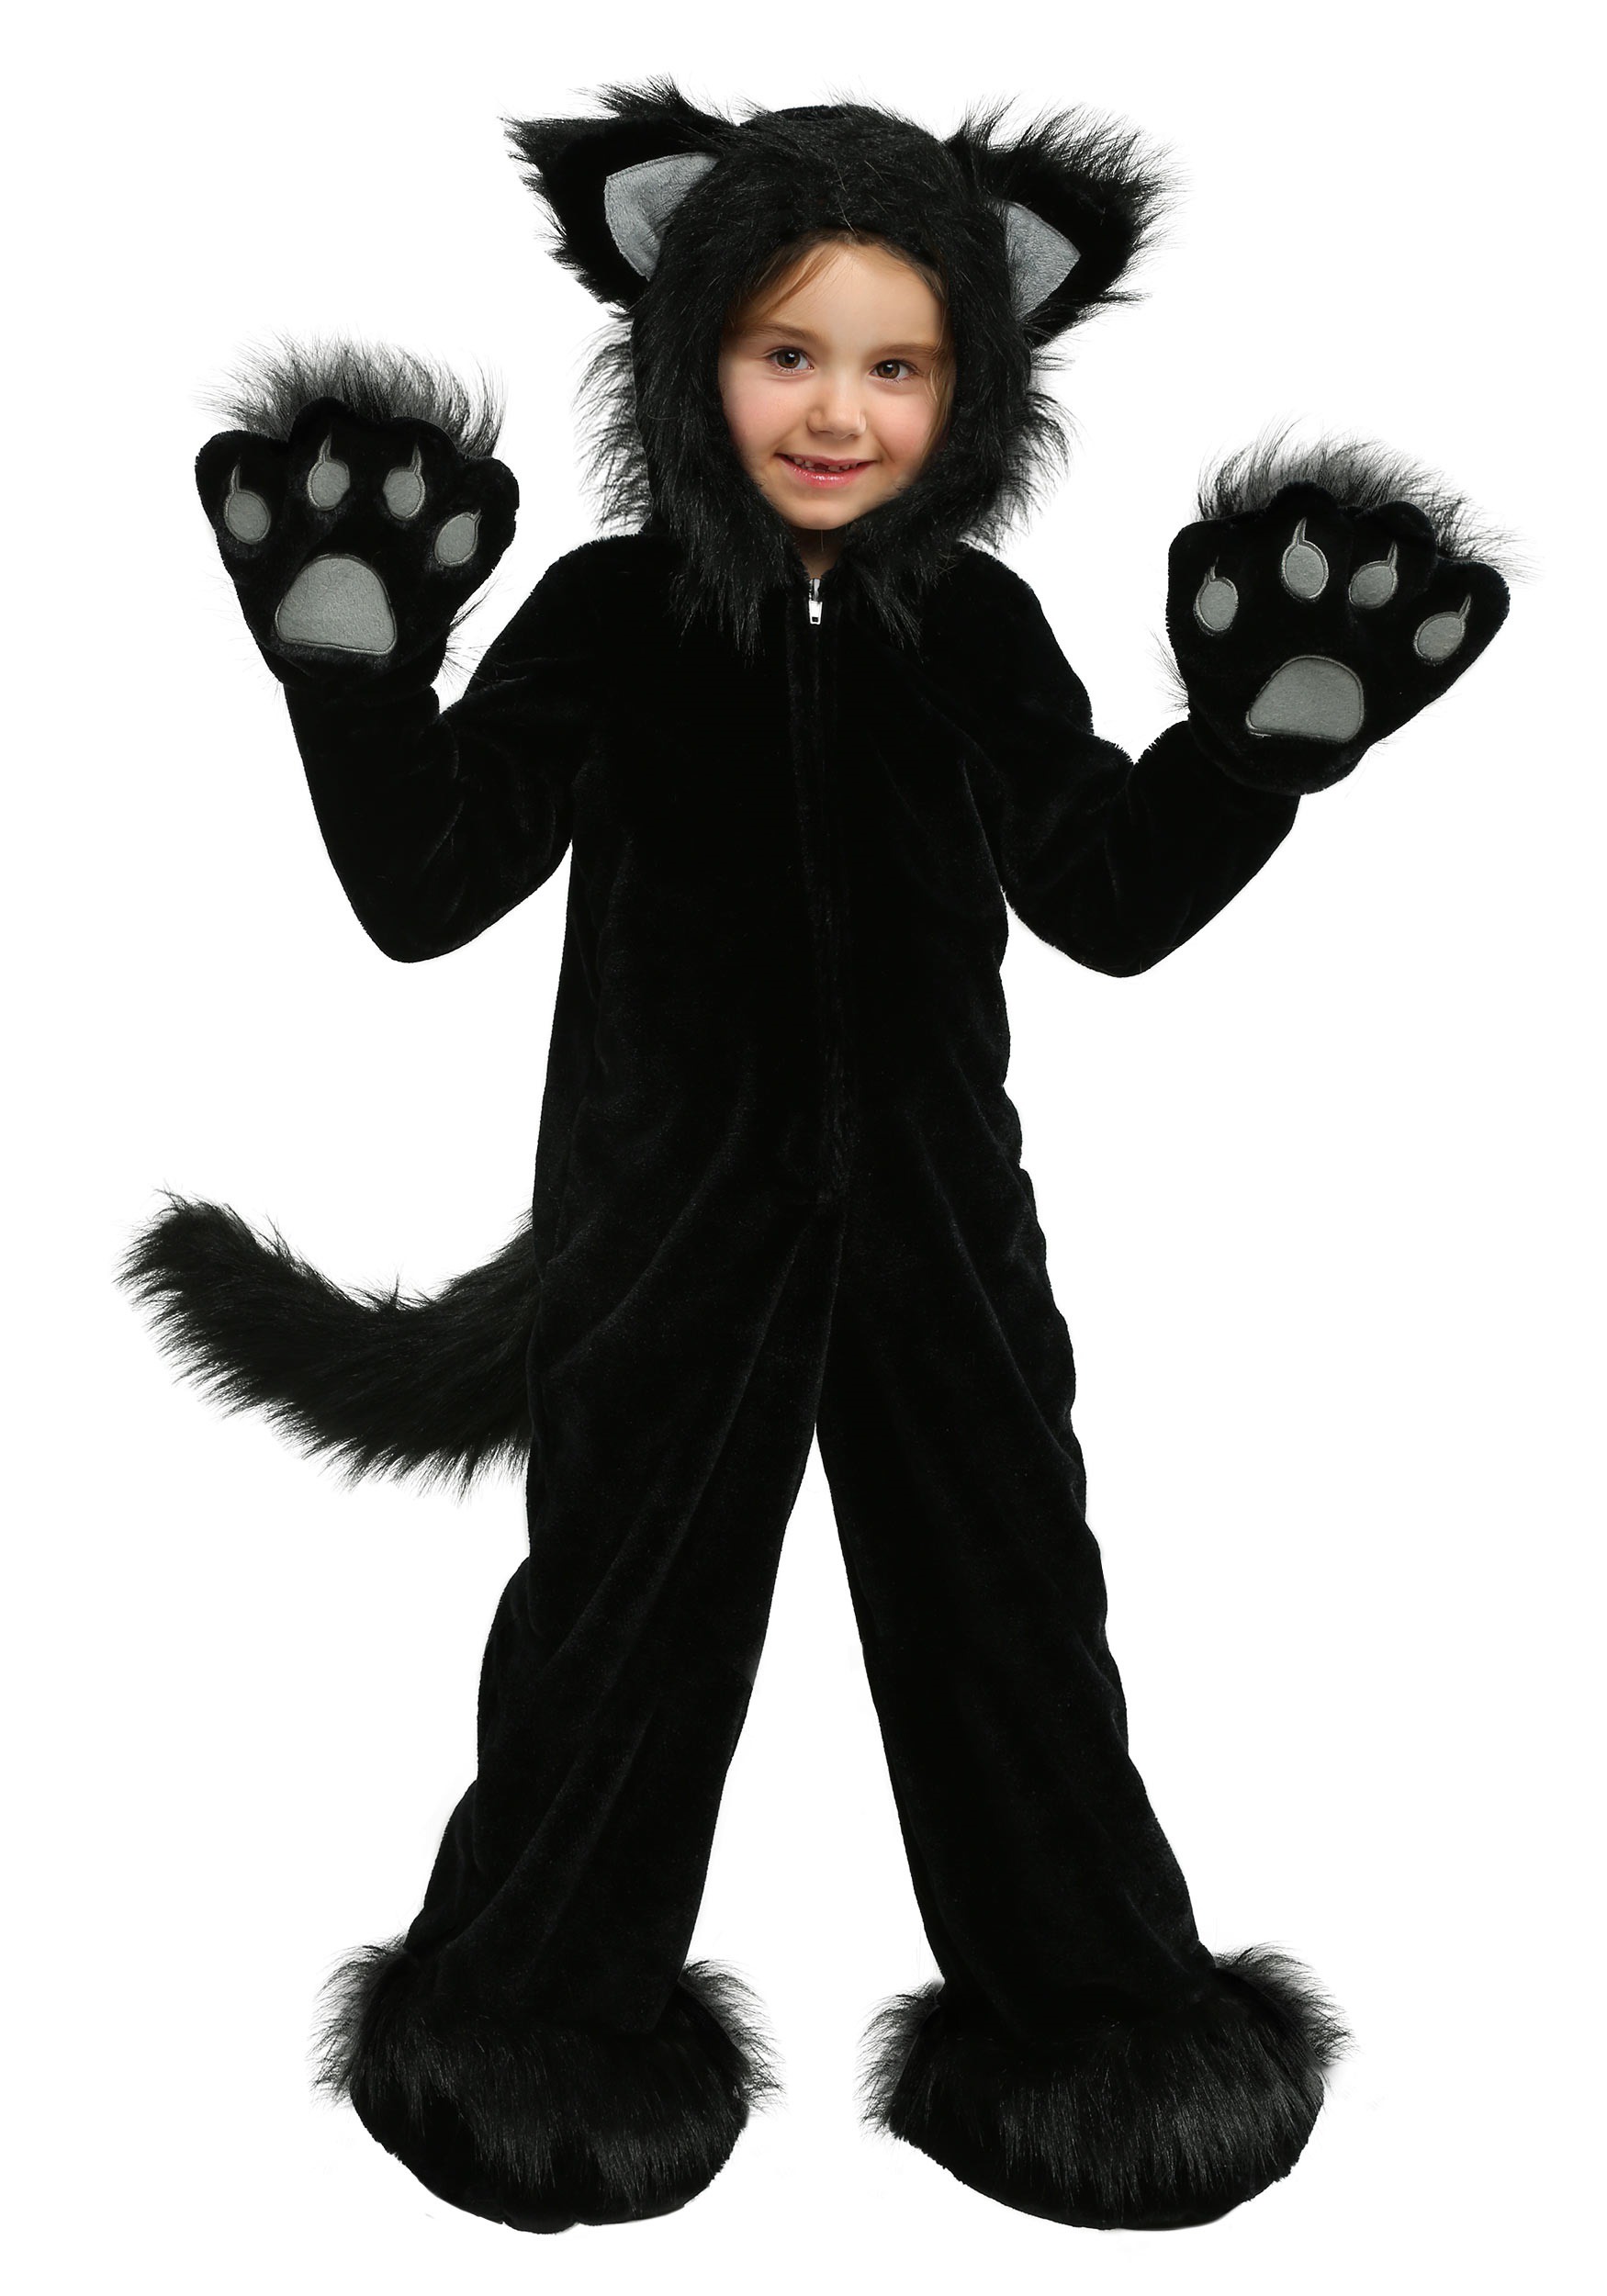 Photos - Fancy Dress Princess Paradise Premium Black Cat Costume for Kids Black PR6043 